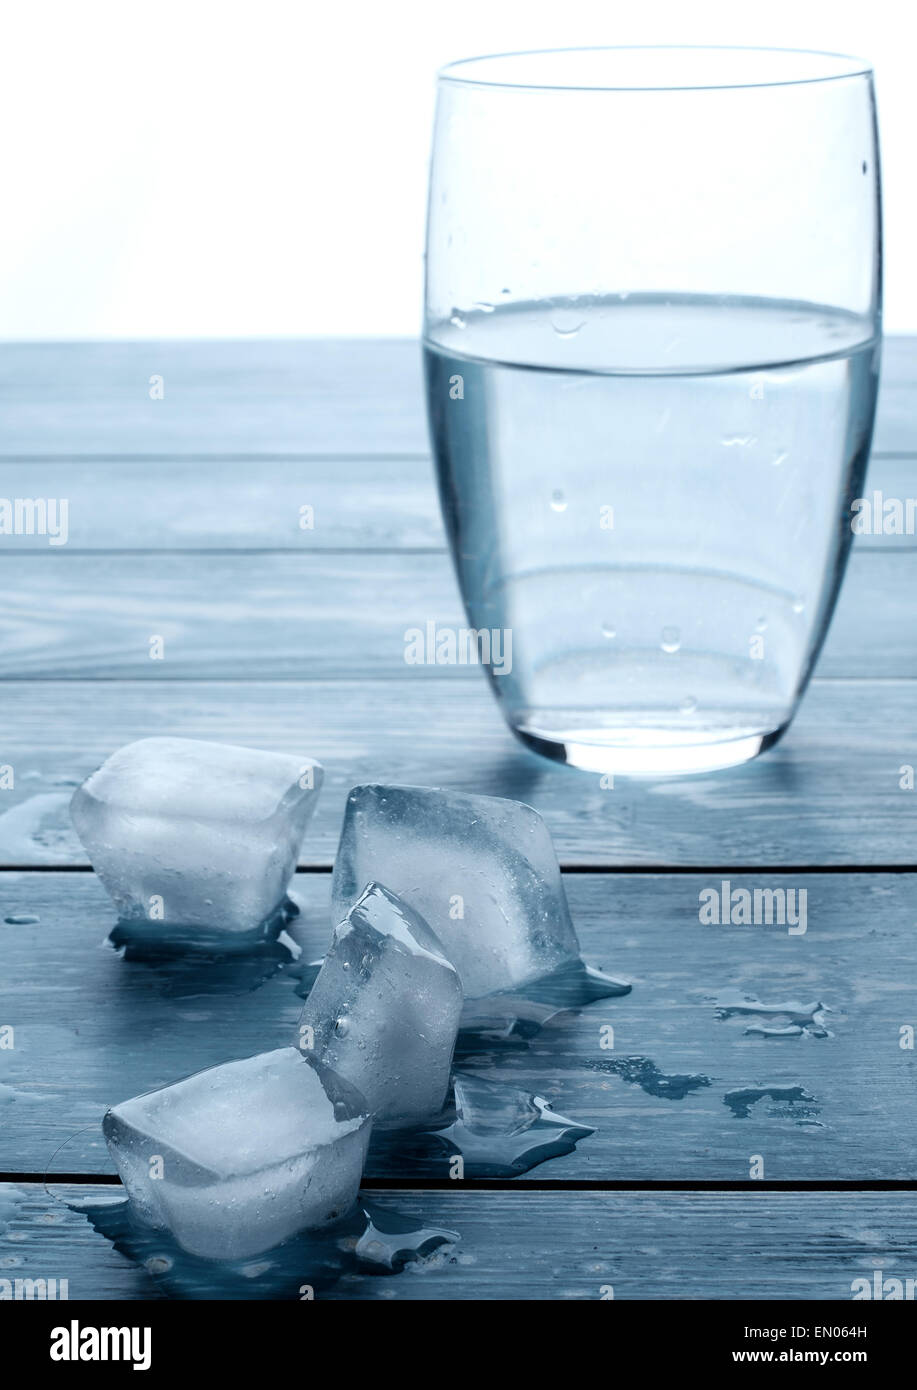 Vaso de agua y cubitos de hielo derritiéndose sobre una tabla de madera Foto de stock